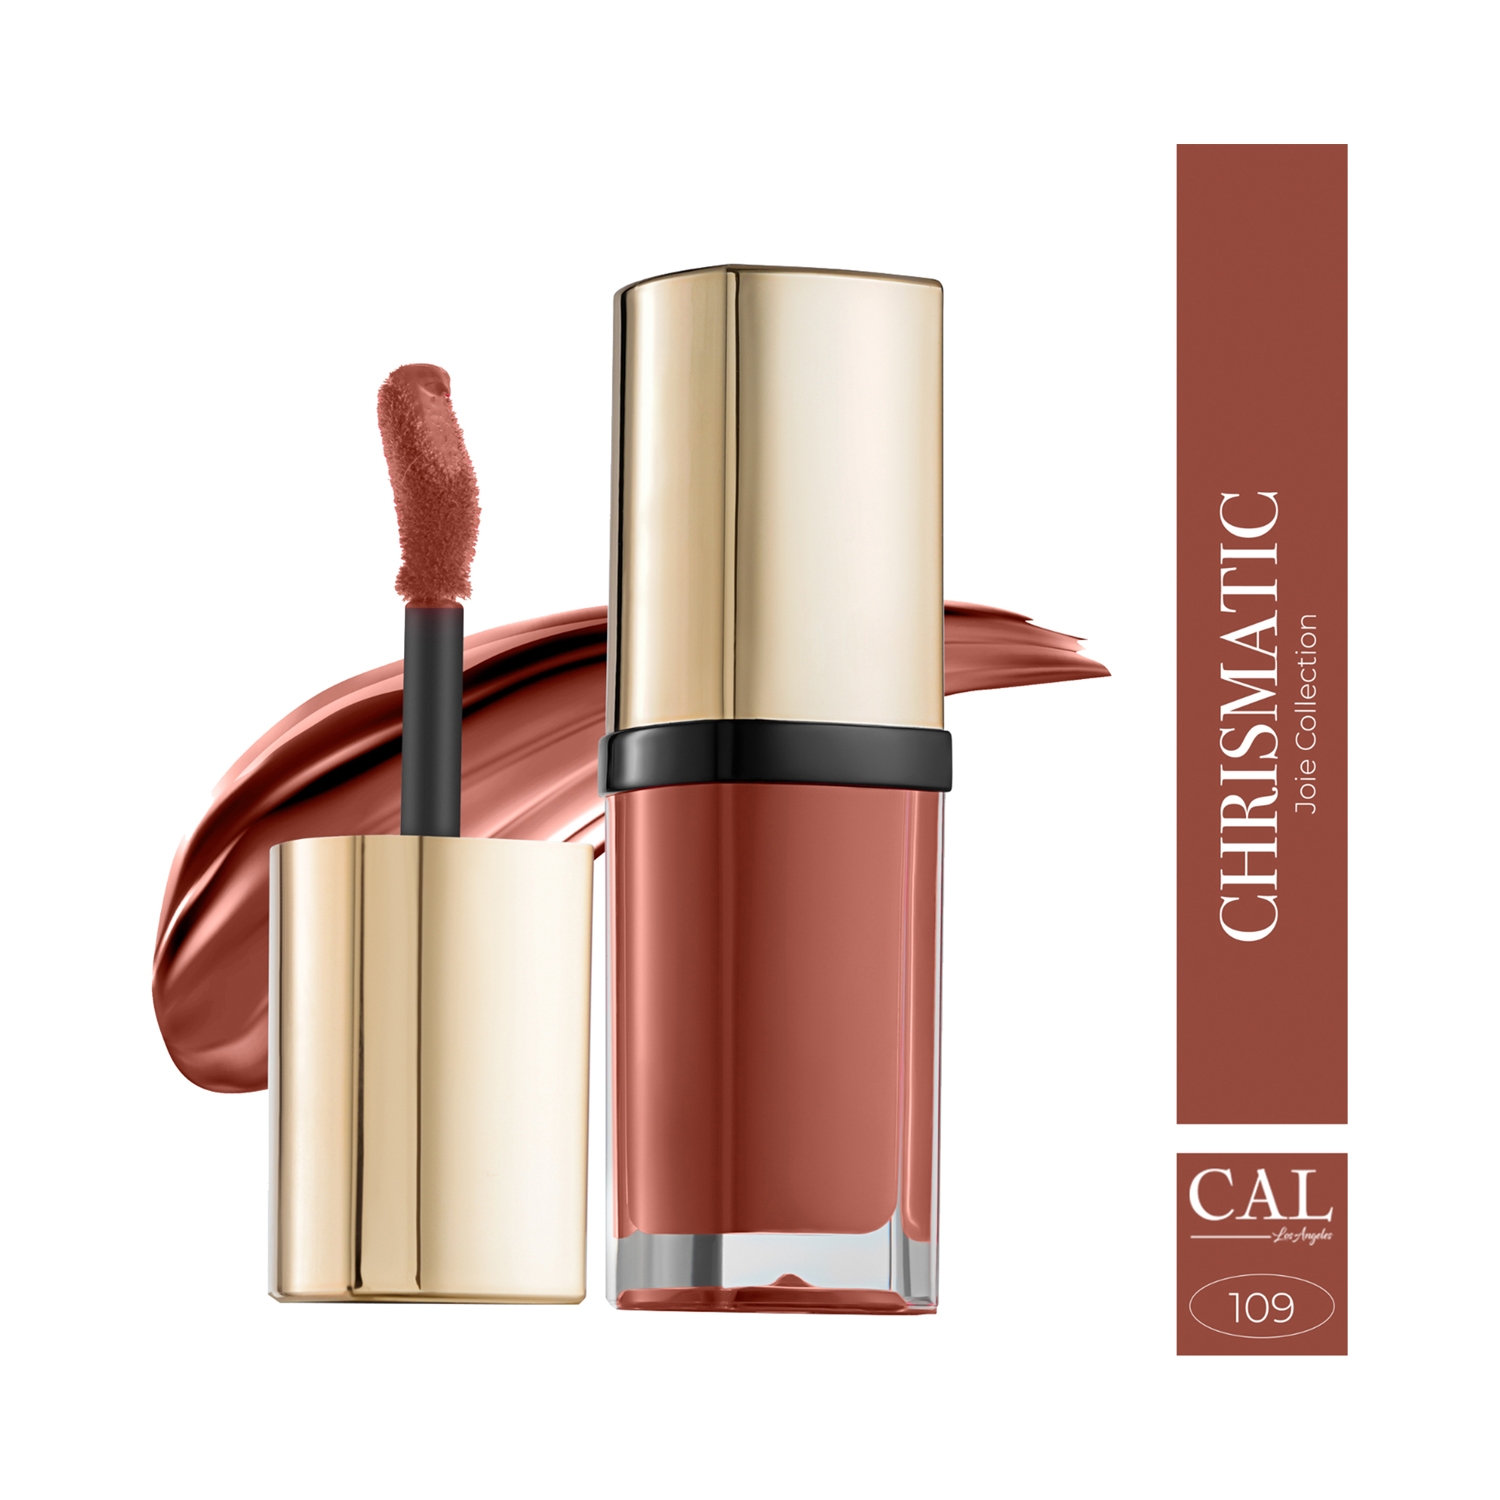 C.A.L Los Angeles | C.A.L Los Angeles Joie Collection Matte Liquid Lipstick - Charismatic (15g)